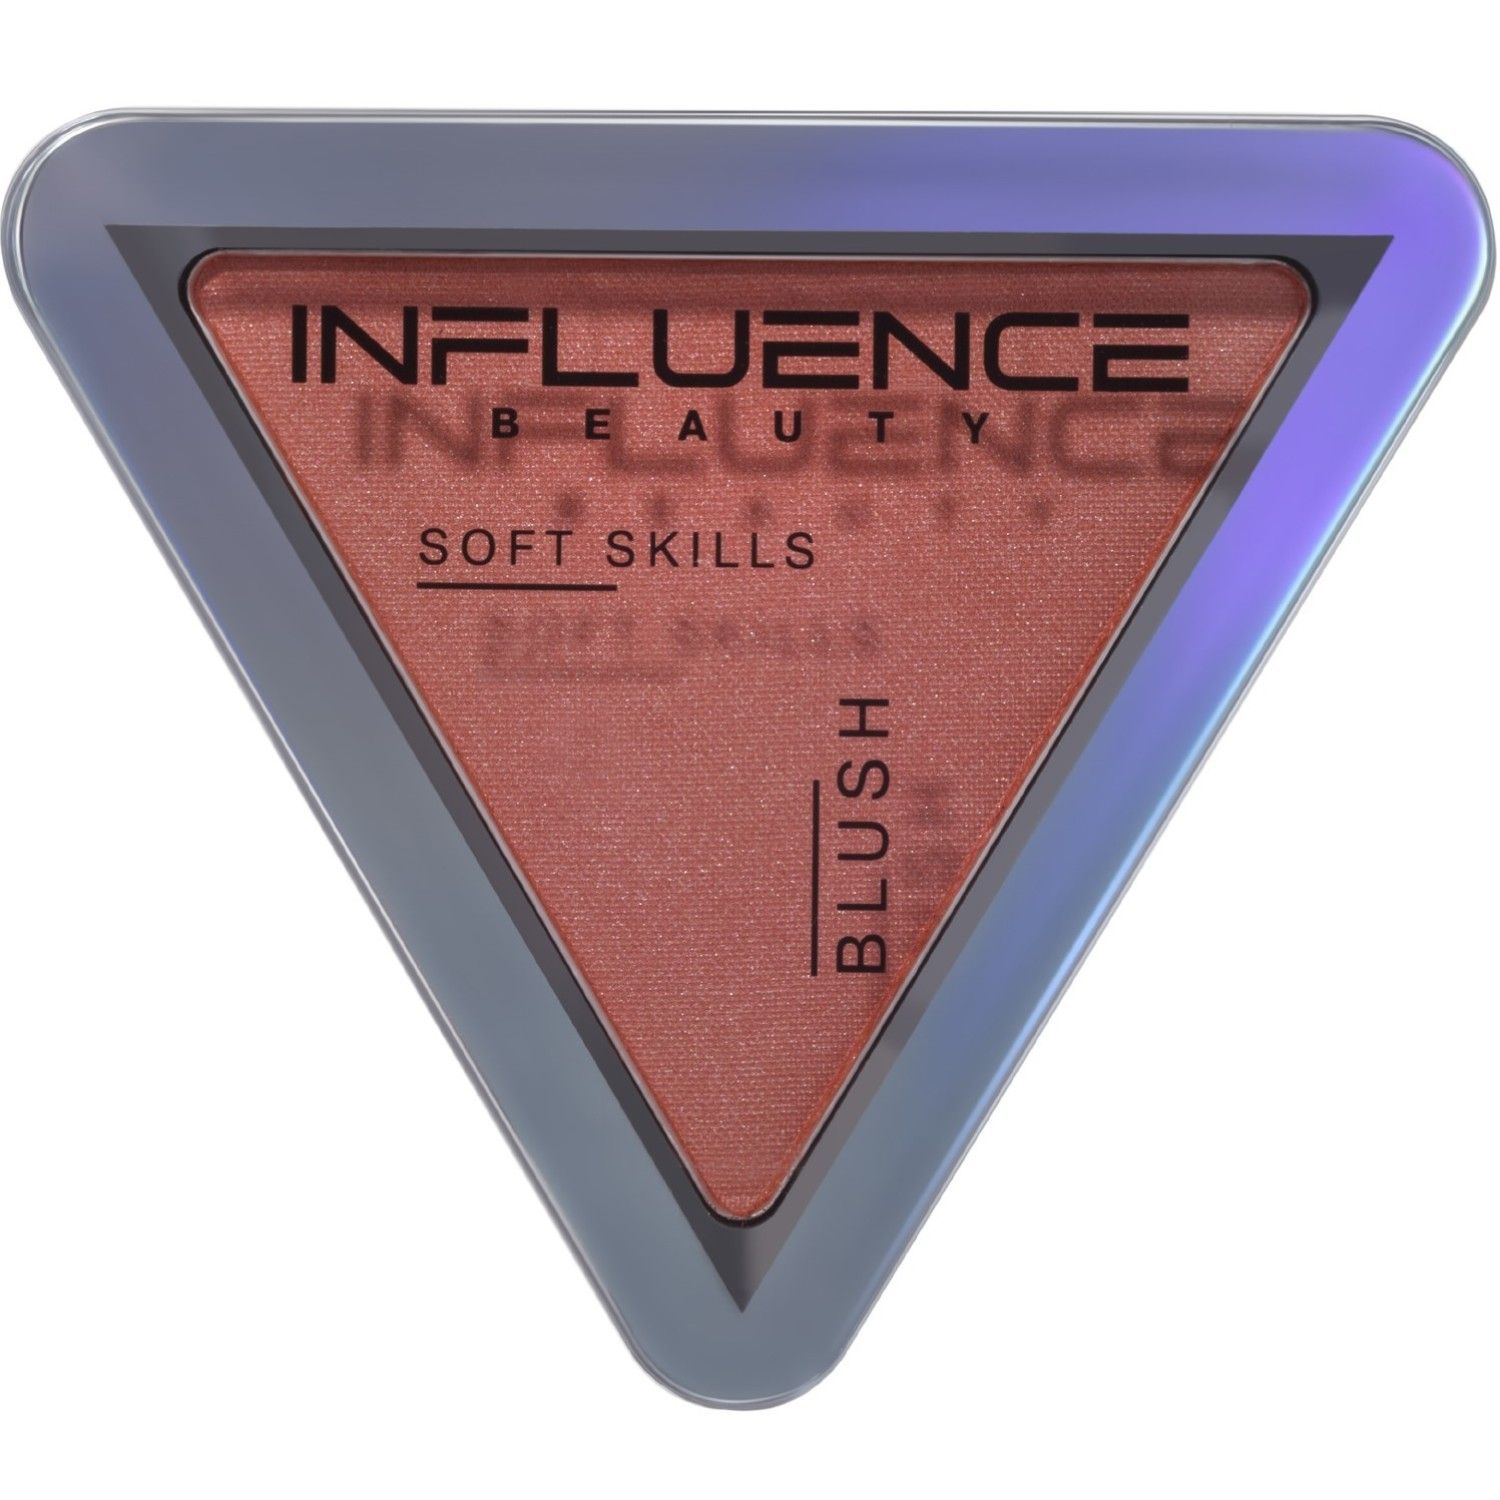 Румяна Influence Beauty Soft Skills компактные, тон 03 розовый с сиянием, 3 г концепция формирования soft skills выпускников вузов